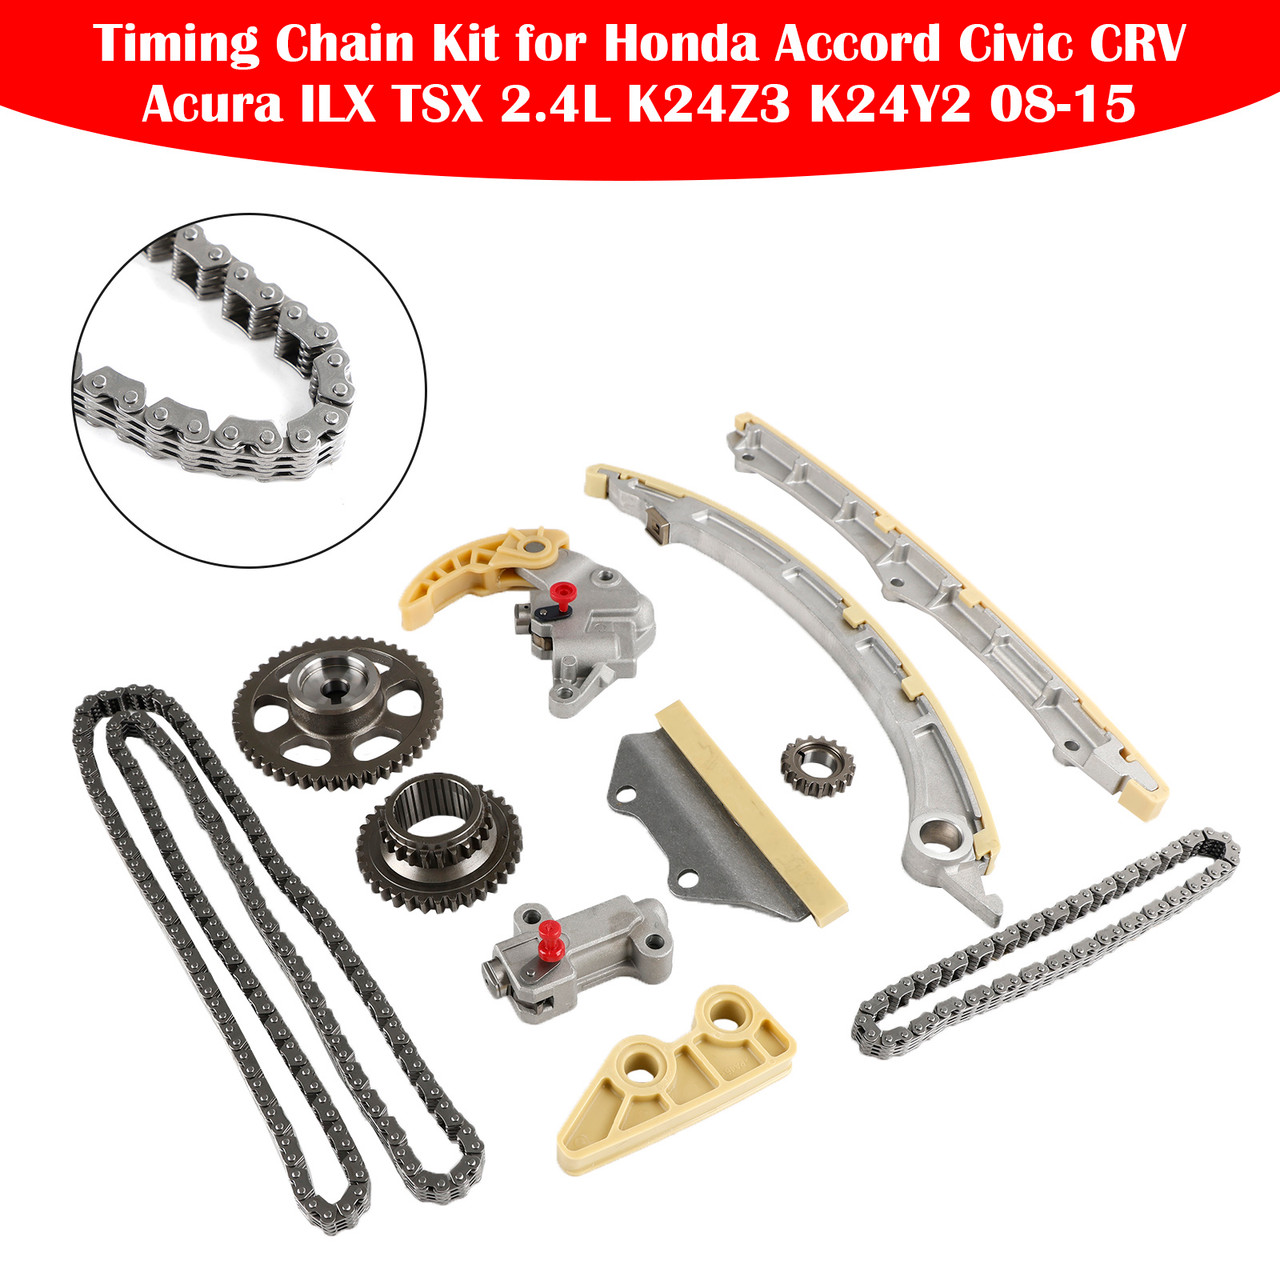 Timing Chain Kit for Honda Accord Civic CRV Acura ILX TSX 2.4L K24Z3 K24Y2 08-15